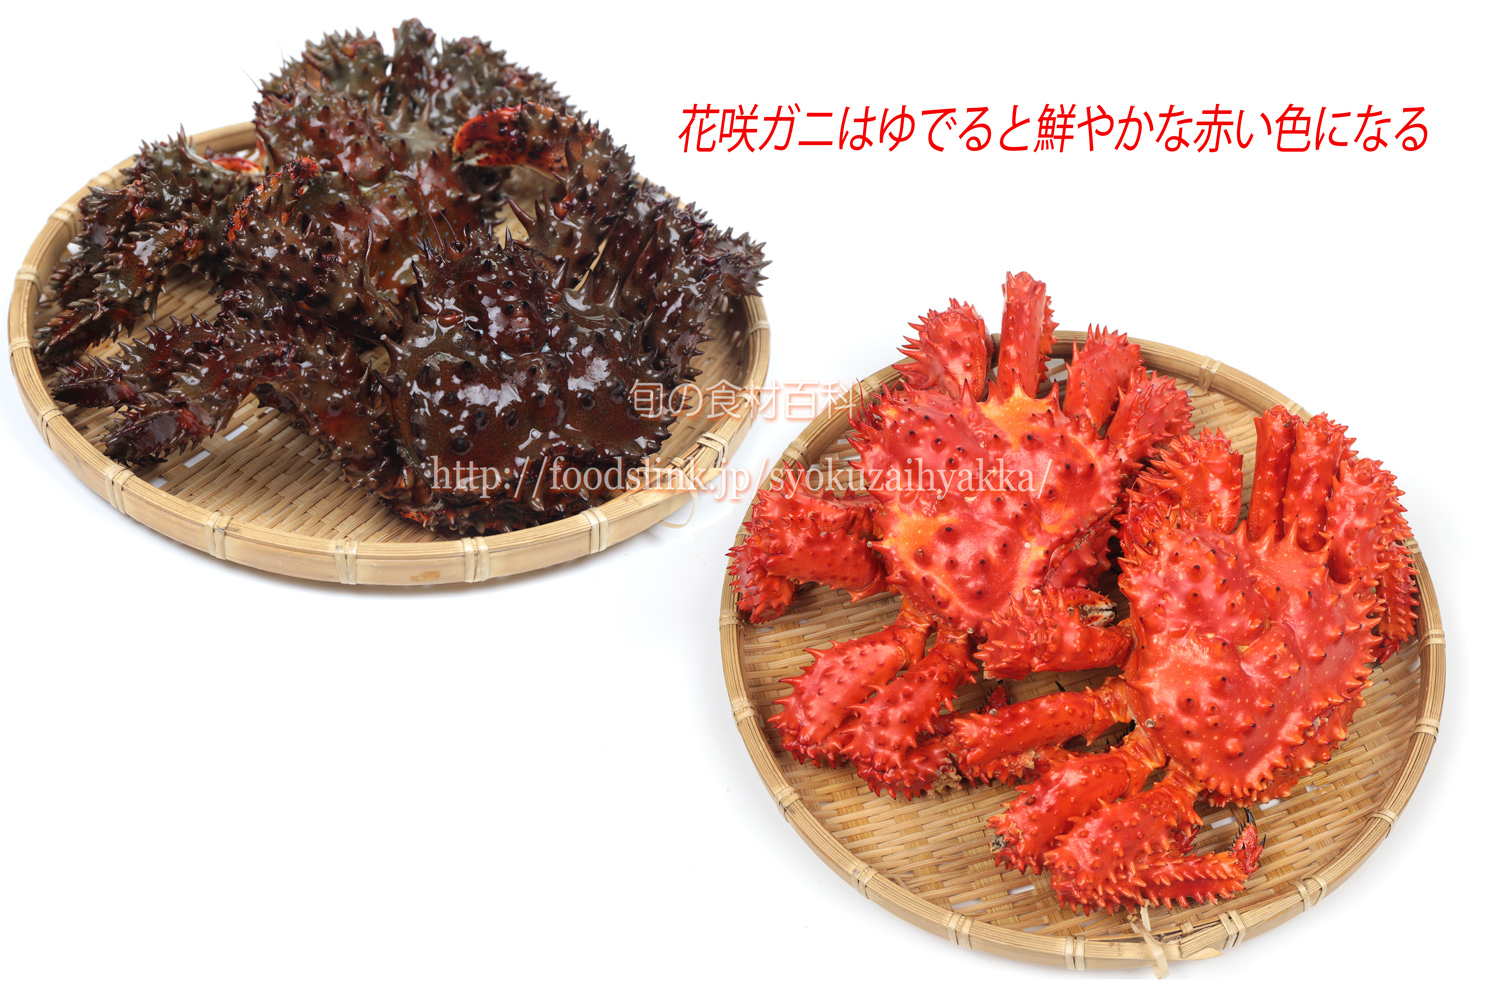 ハナサキガニ 花咲蟹 はなさきがにの目利きと料理 旬の魚介百科